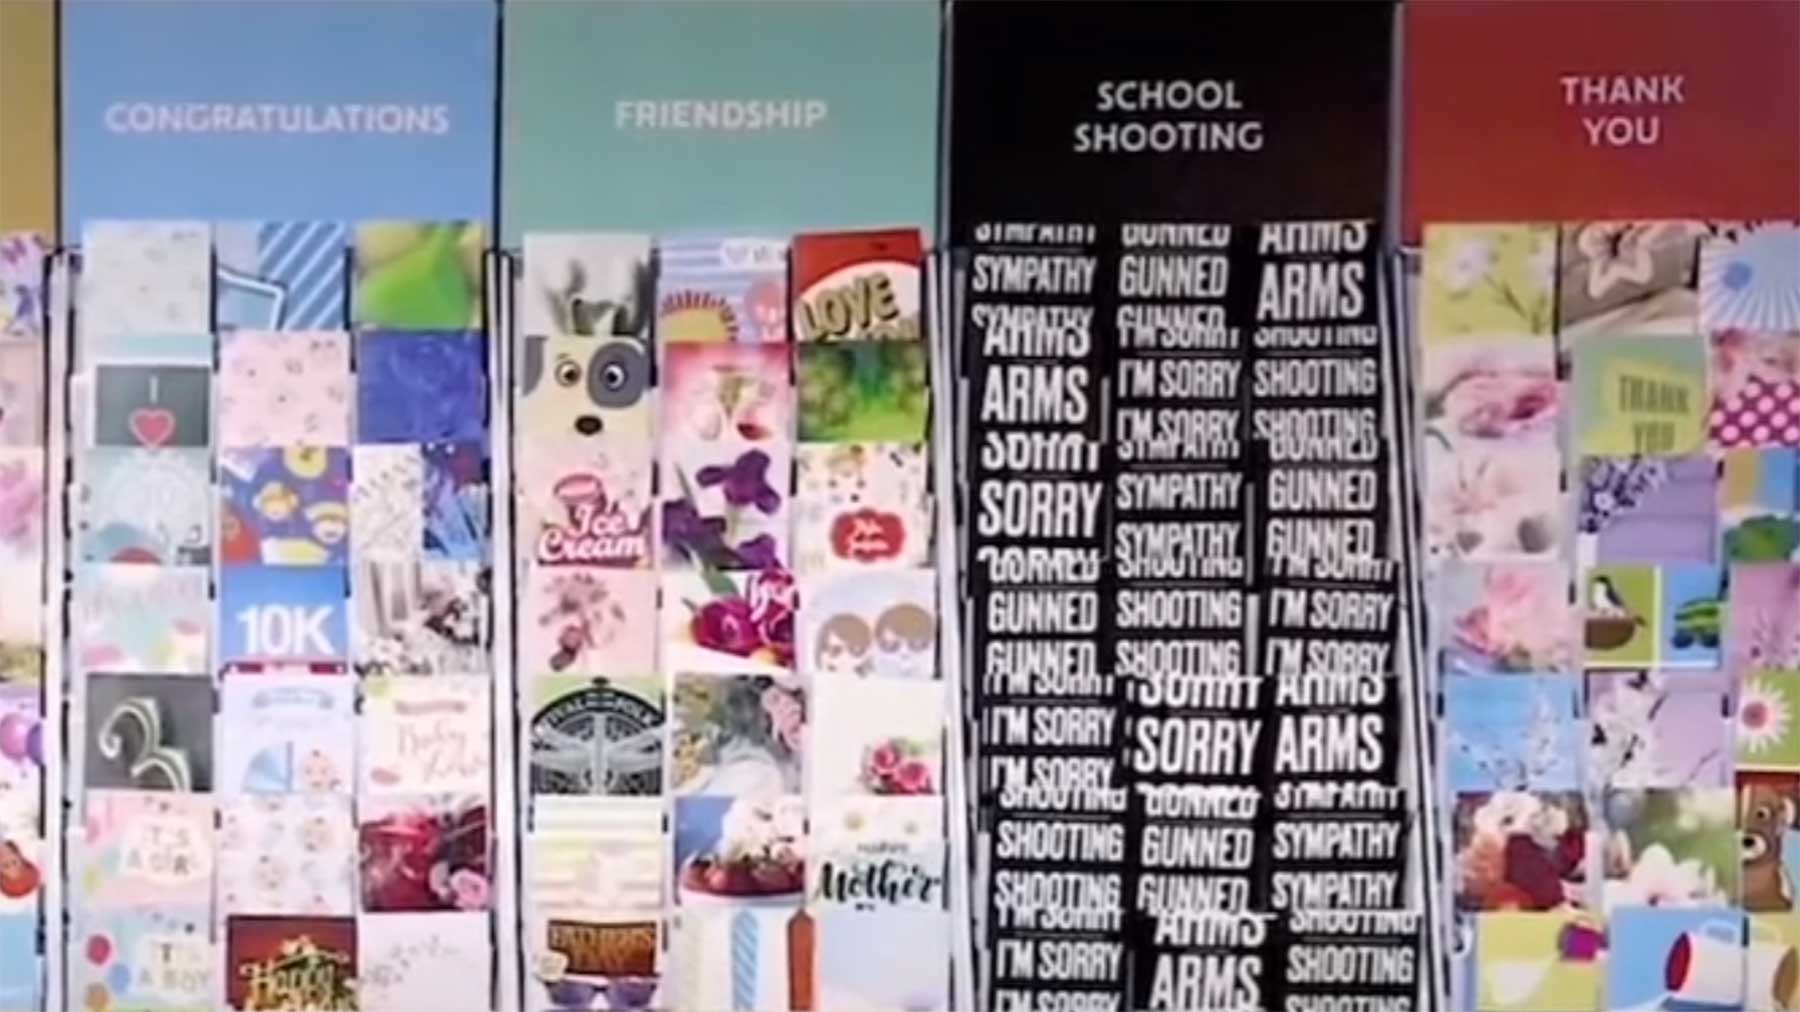 Kunstinstallation bietet Beileidskarten für Schul-Schießereien an School-shooting-grusskarten-mass-sympathy-cards 